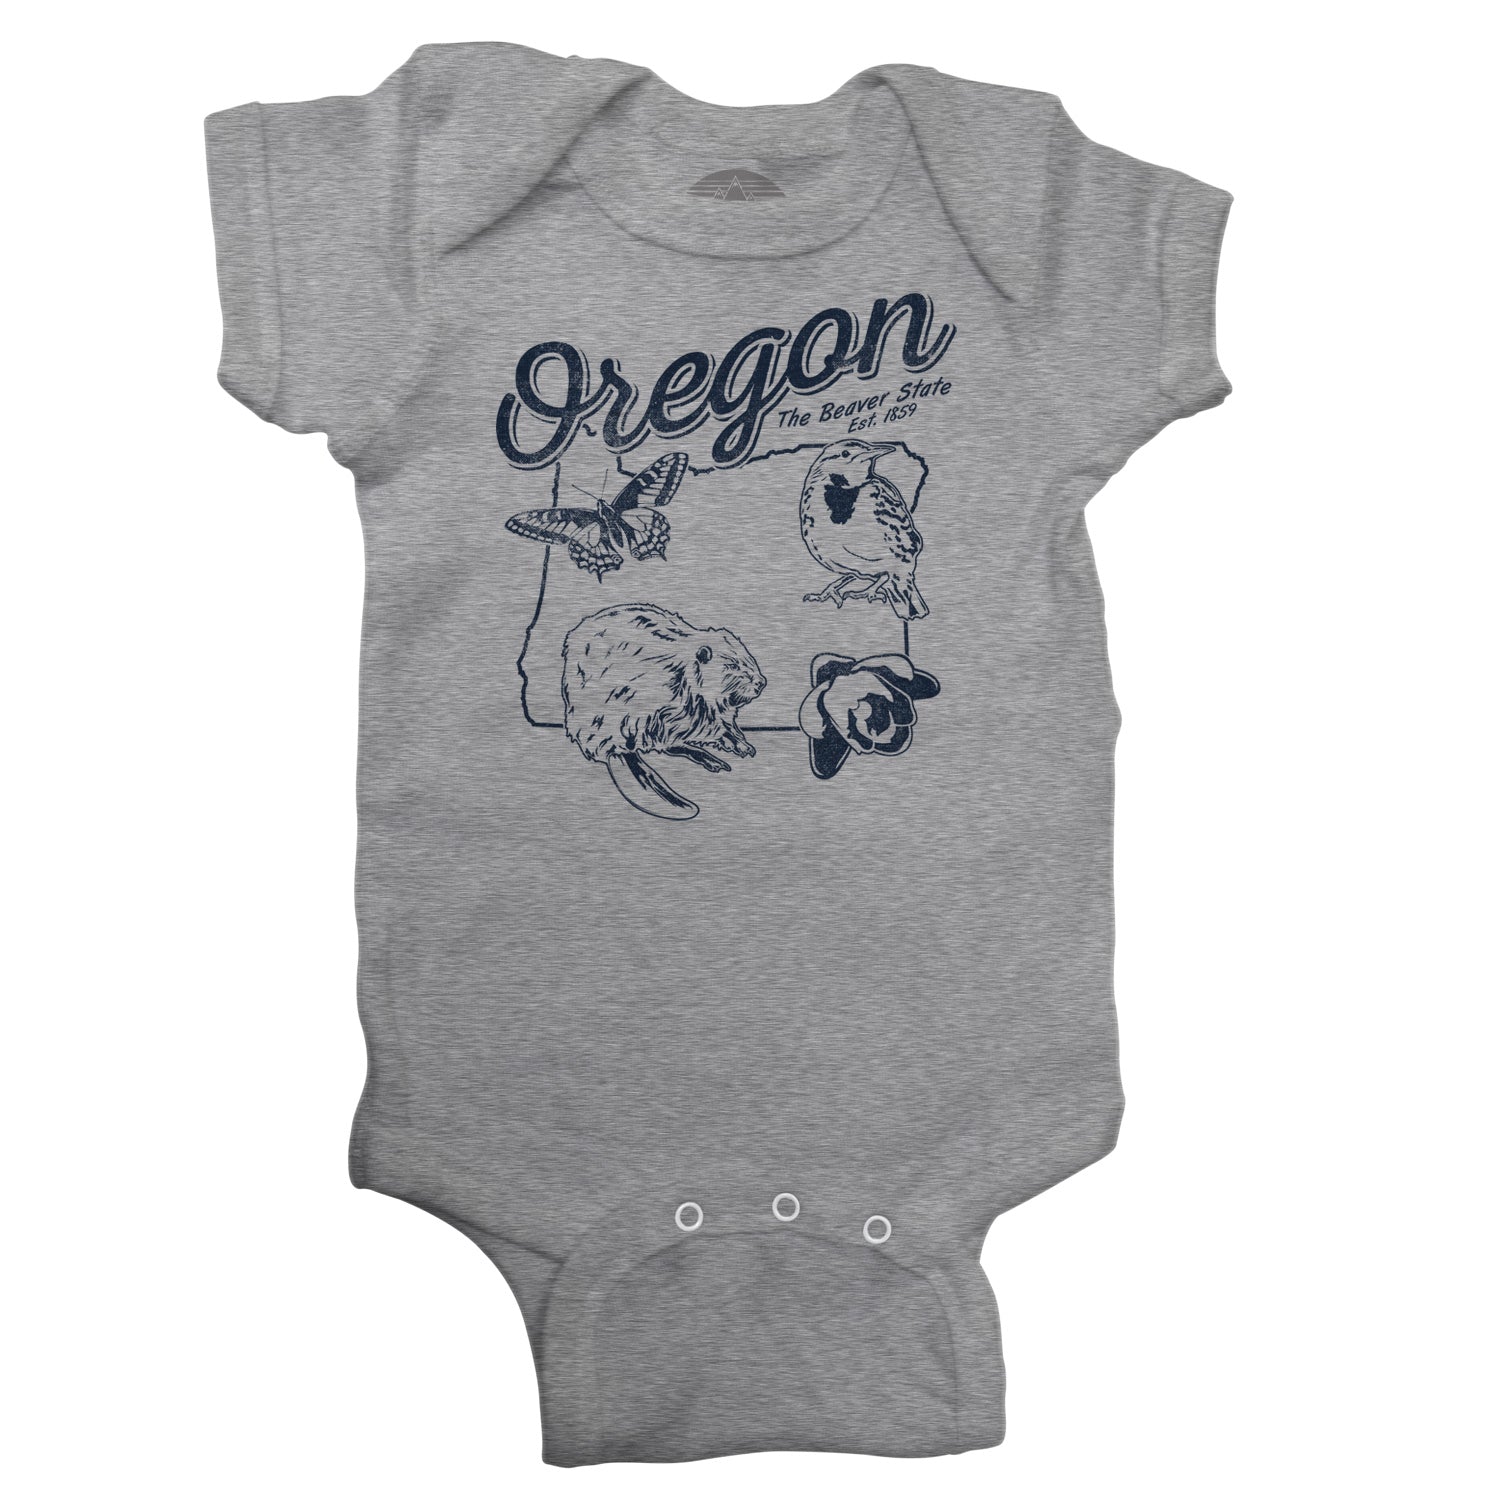 Vintage Oregon Infant Bodysuit - Unisex Fit